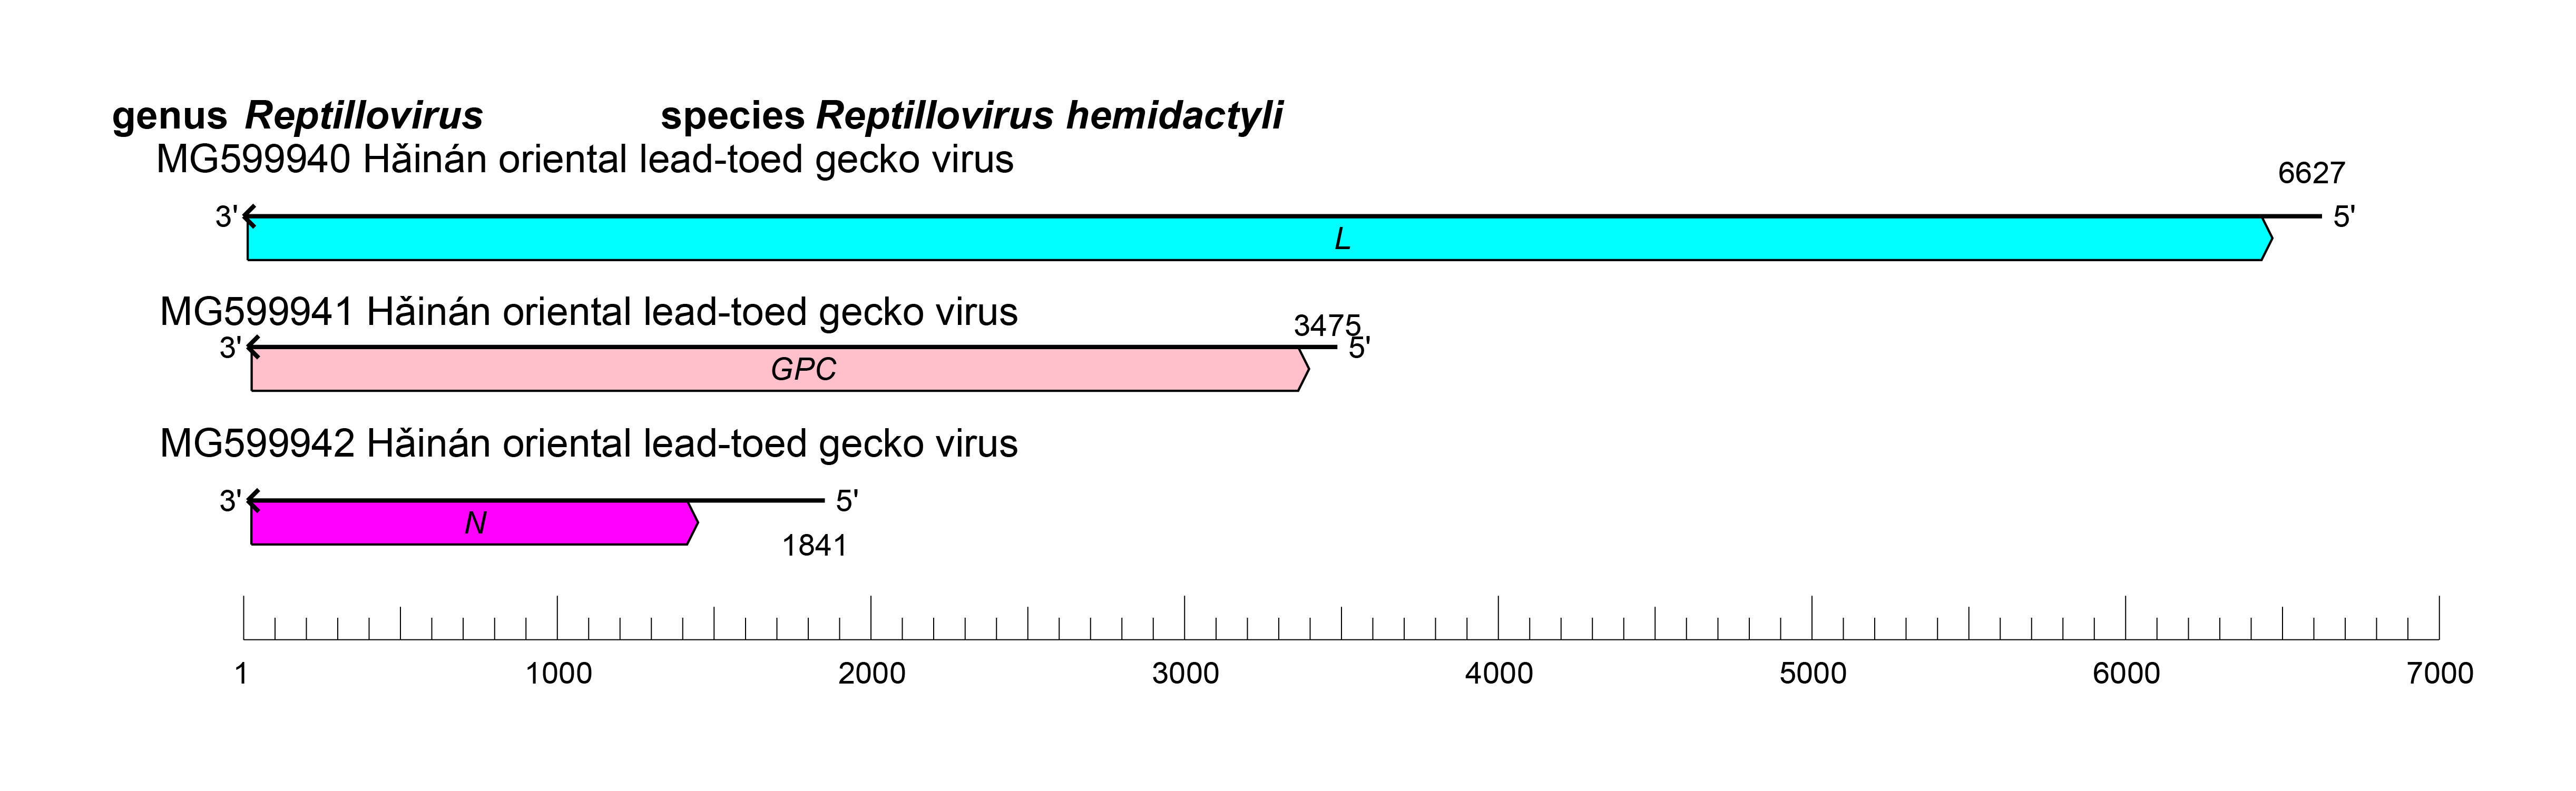 Reptillovirus genome